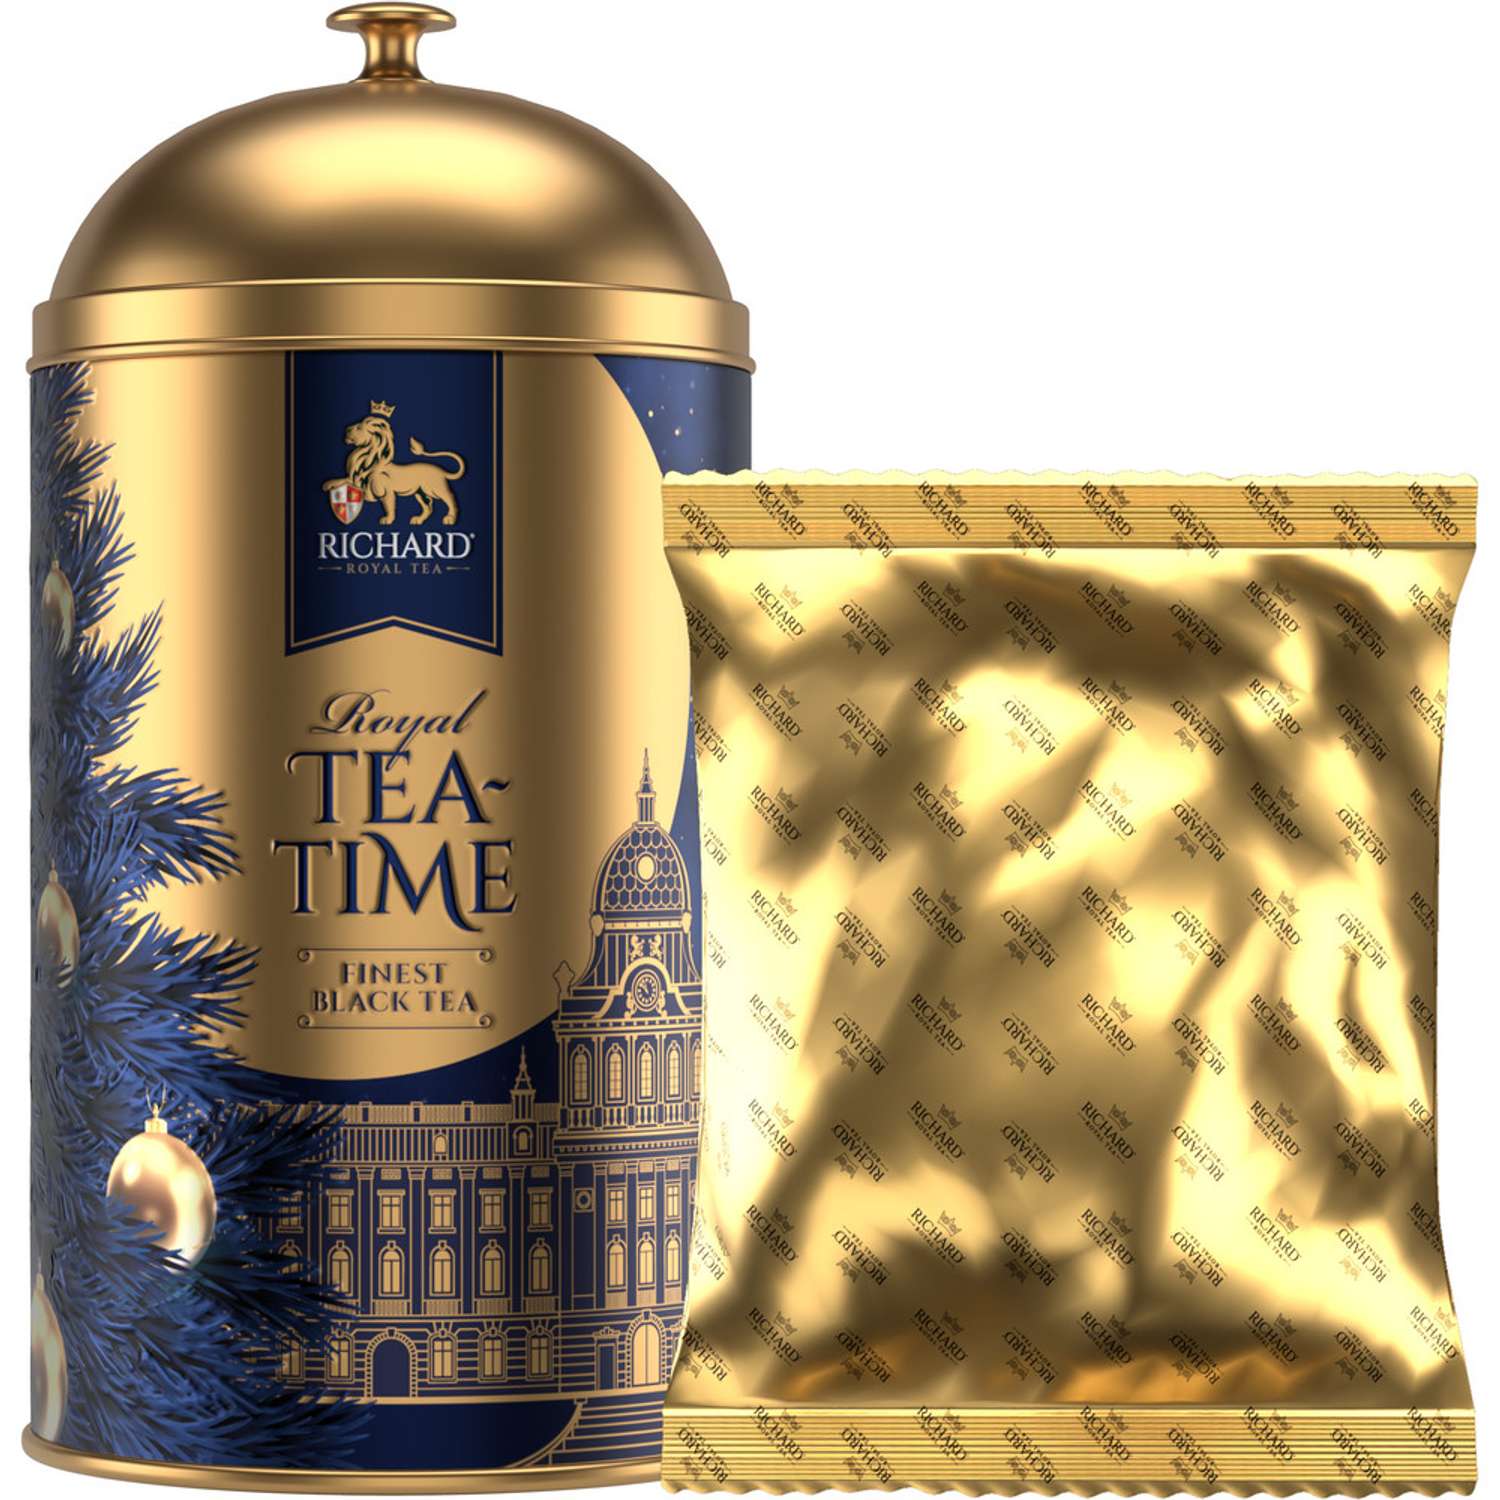 Чай подарочный Richard Royal Teatime чёрн лист 60г жесть - фото 2